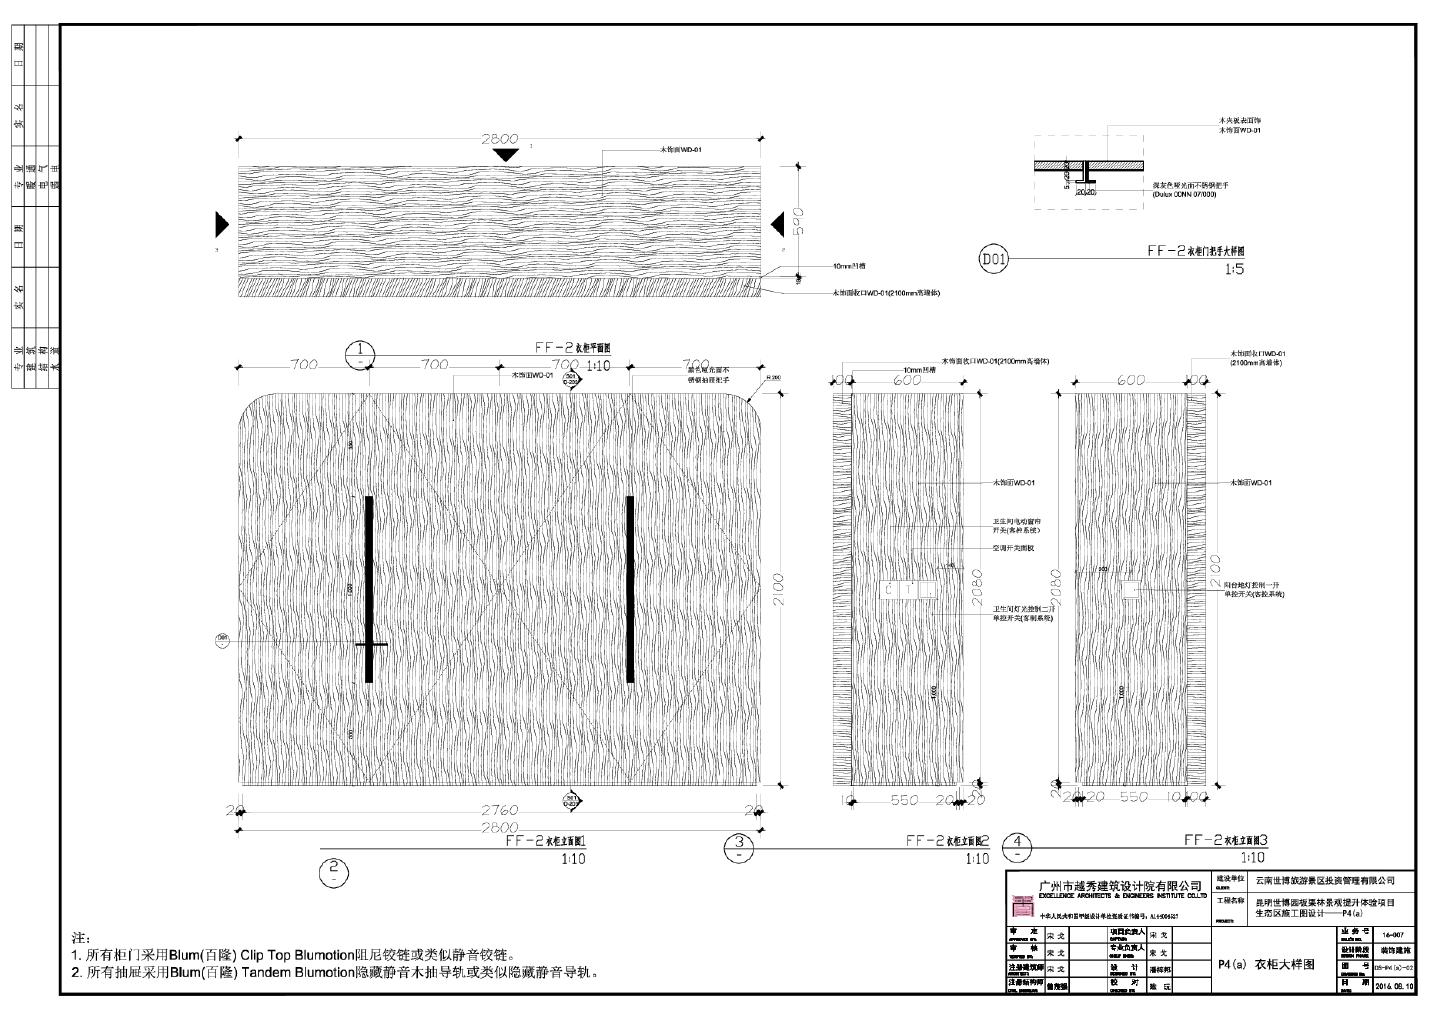 昆明世博园板栗林景观提升体验项目接待区施工图设计-P4A衣柜详图CAD图.dwg